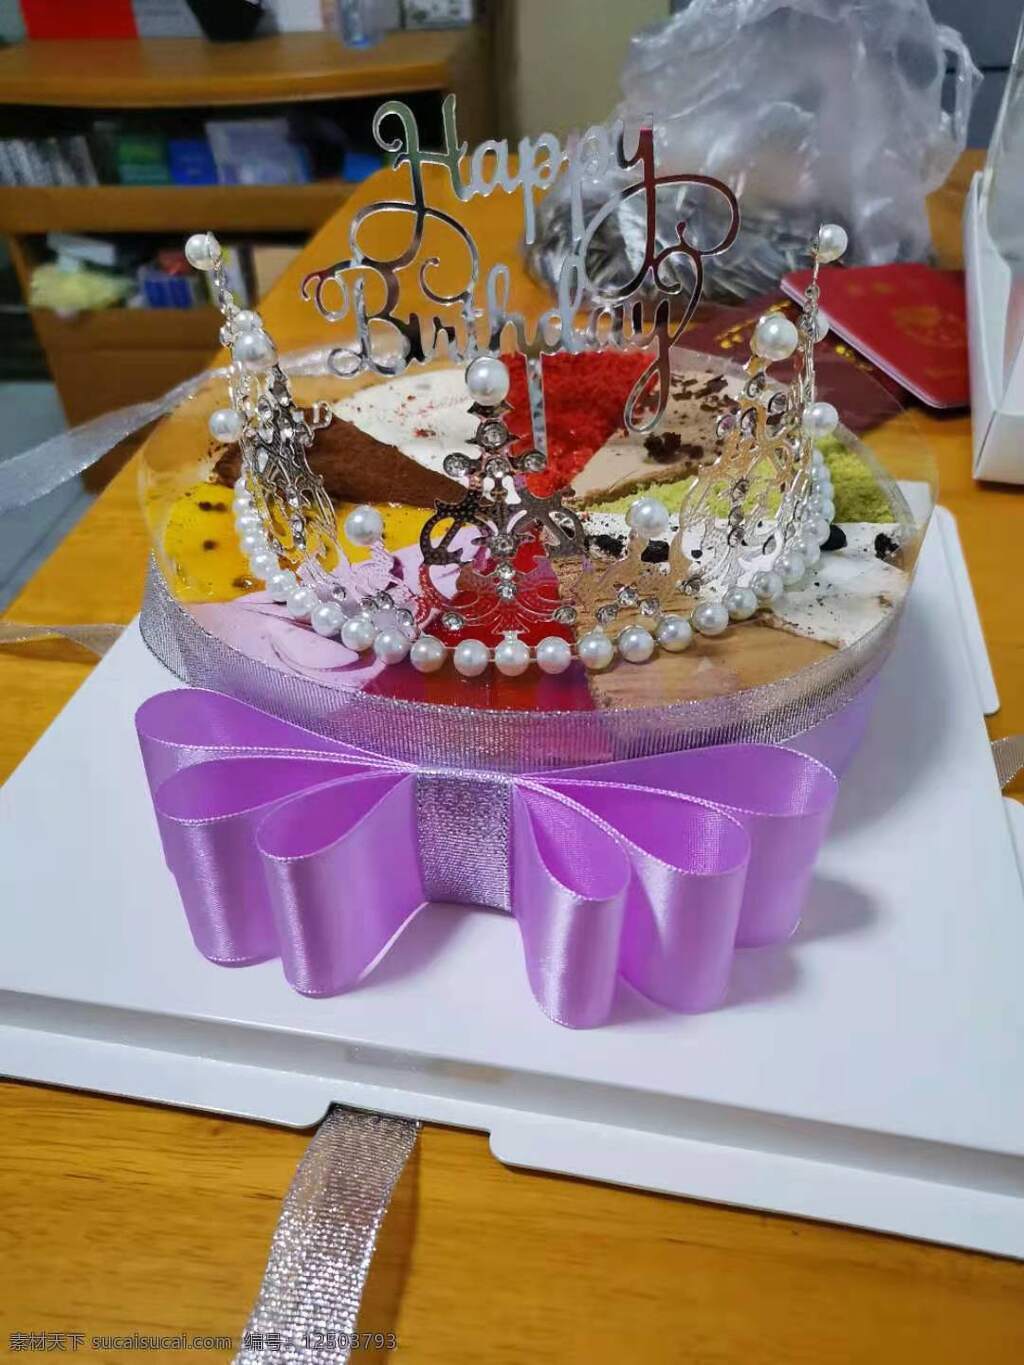 生日蛋糕图片 生日 蛋糕 紫色花 珍珠球 圆形等 餐饮美食 西餐美食